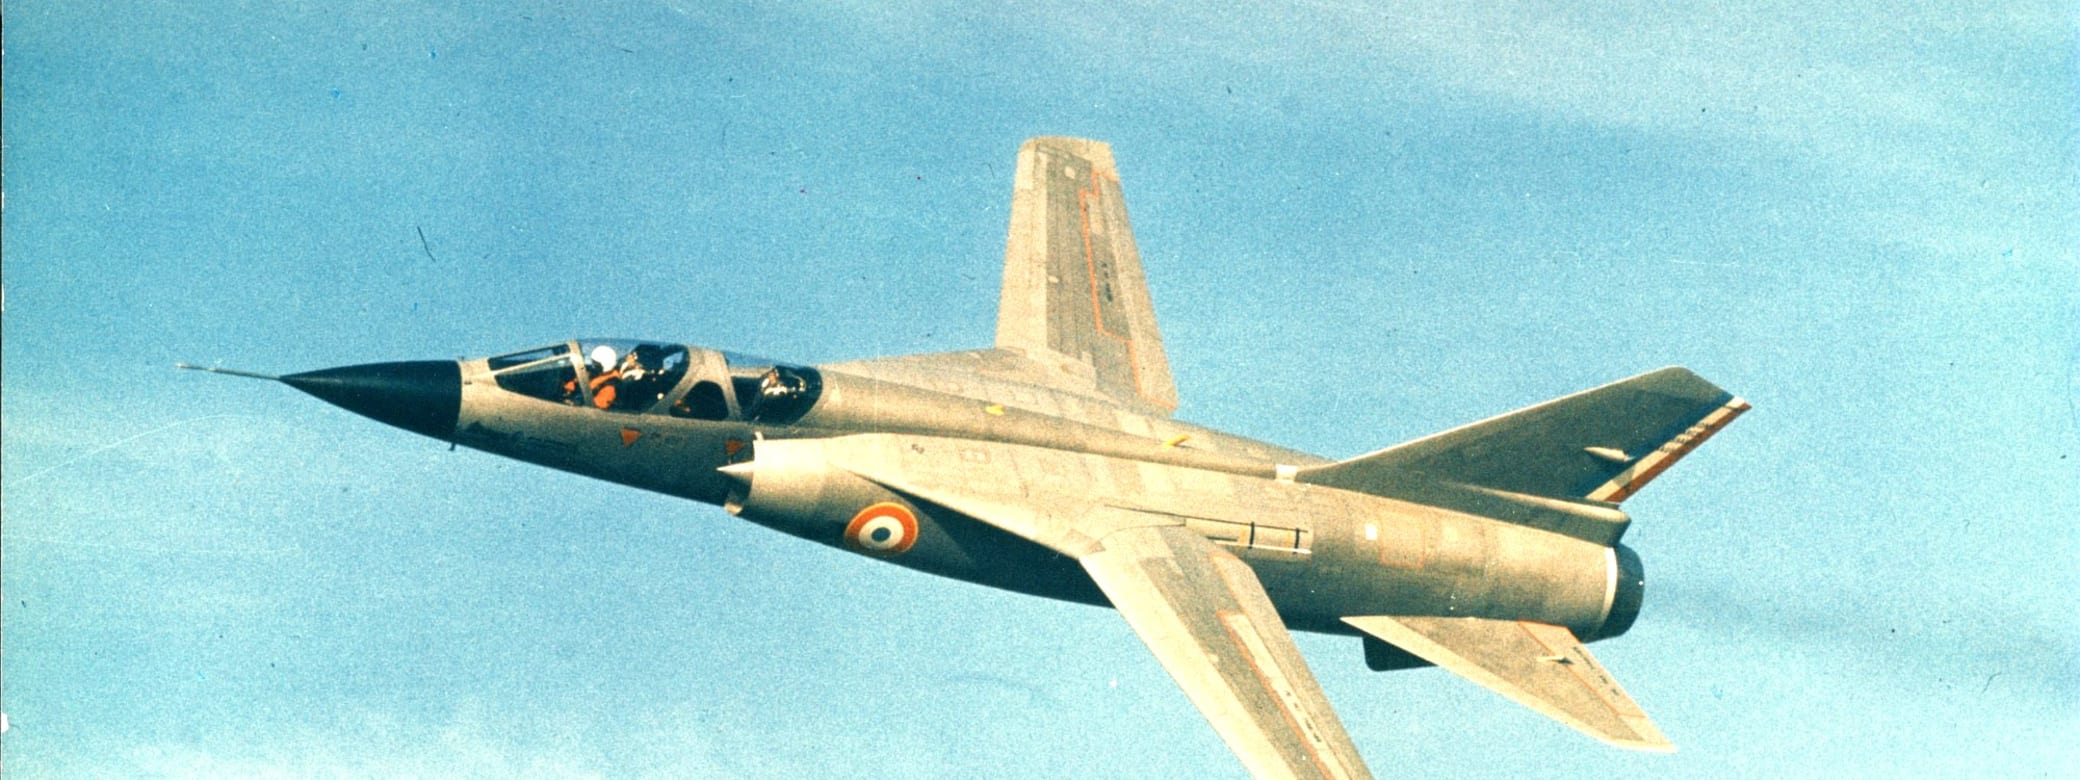 Mirage G in flight